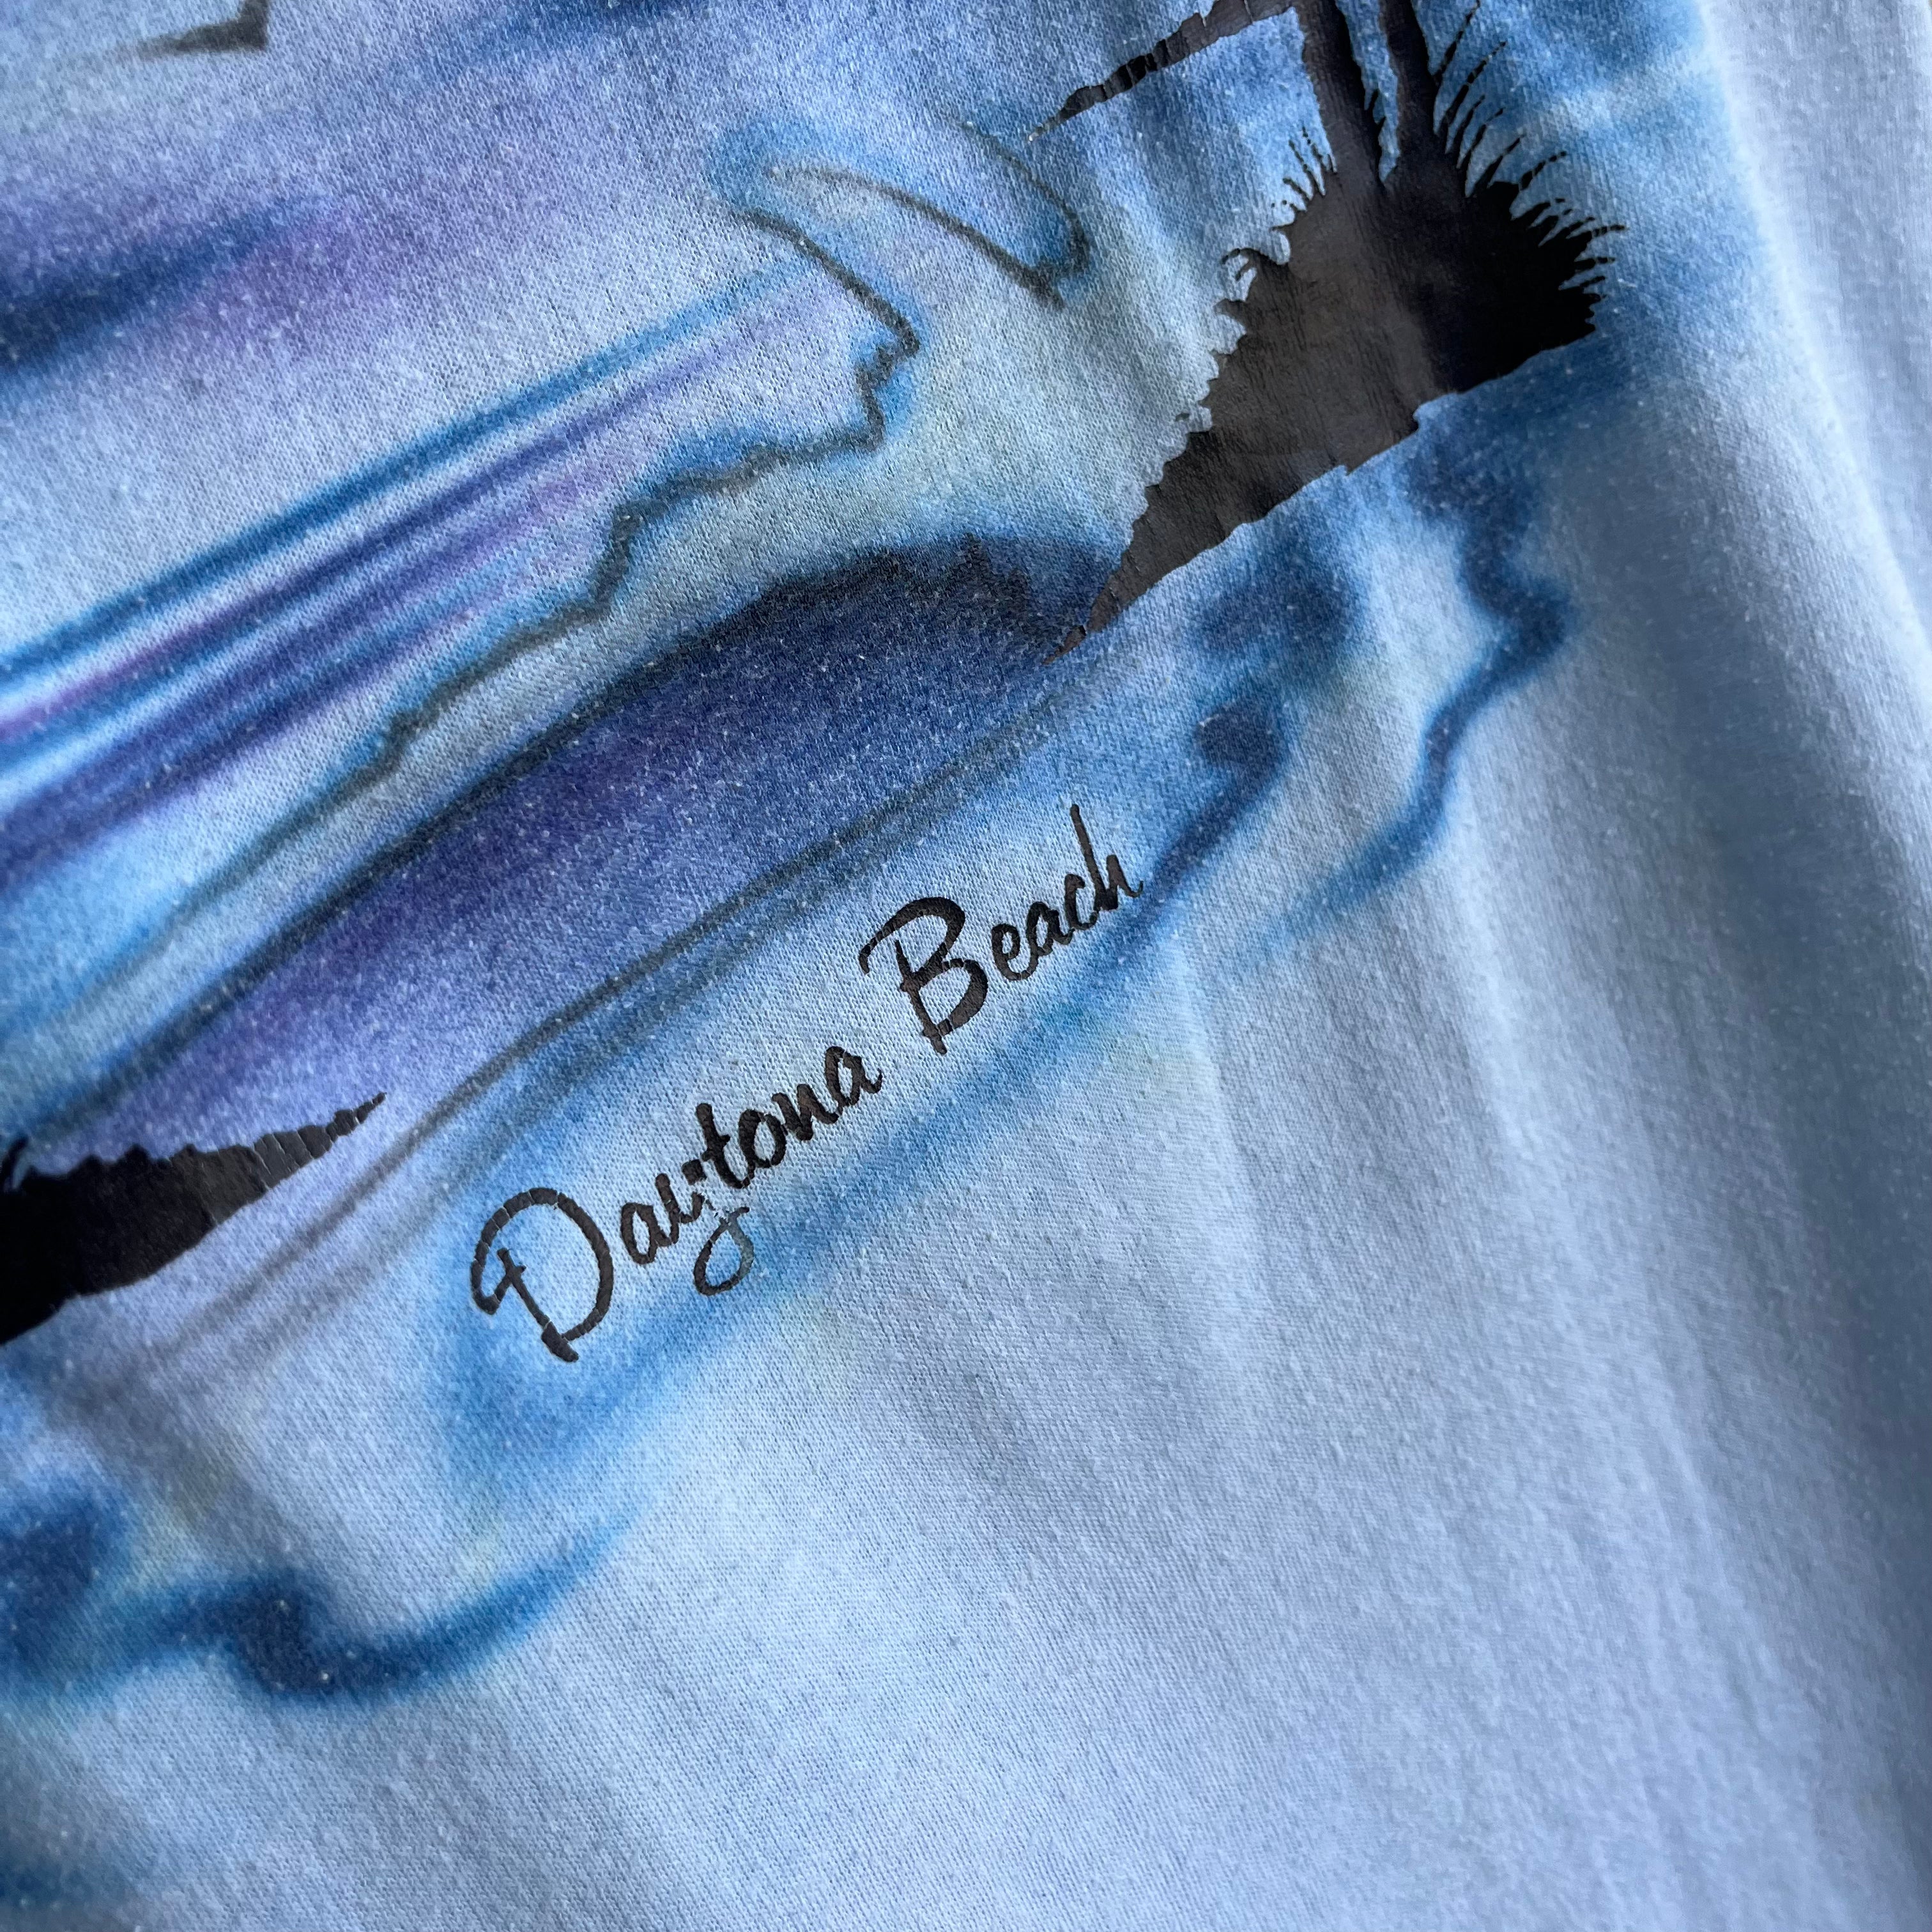 1980s Airbrush Daytona Tourist T-Shirt